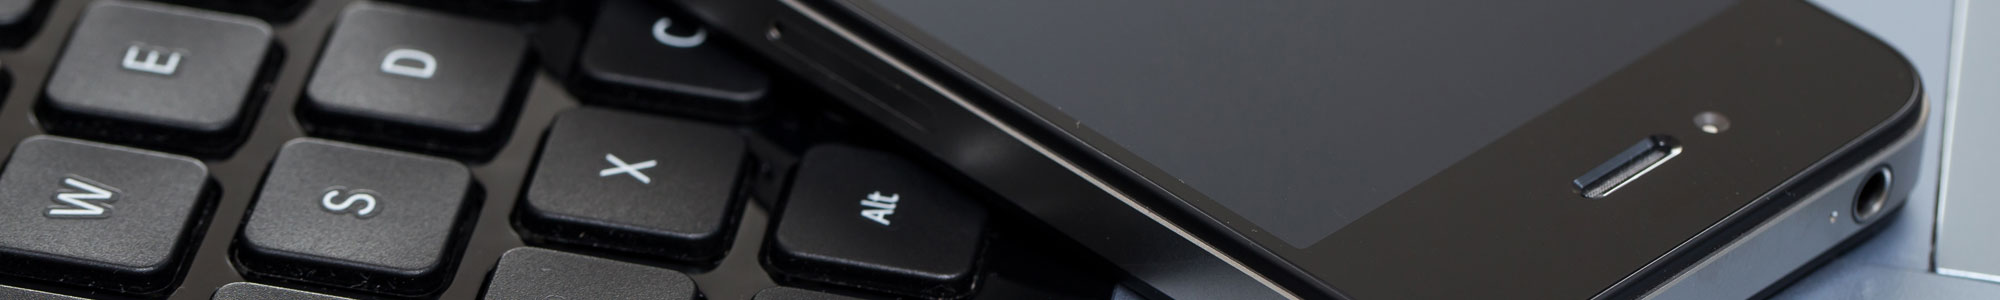 Mobile phone on laptop keyboard